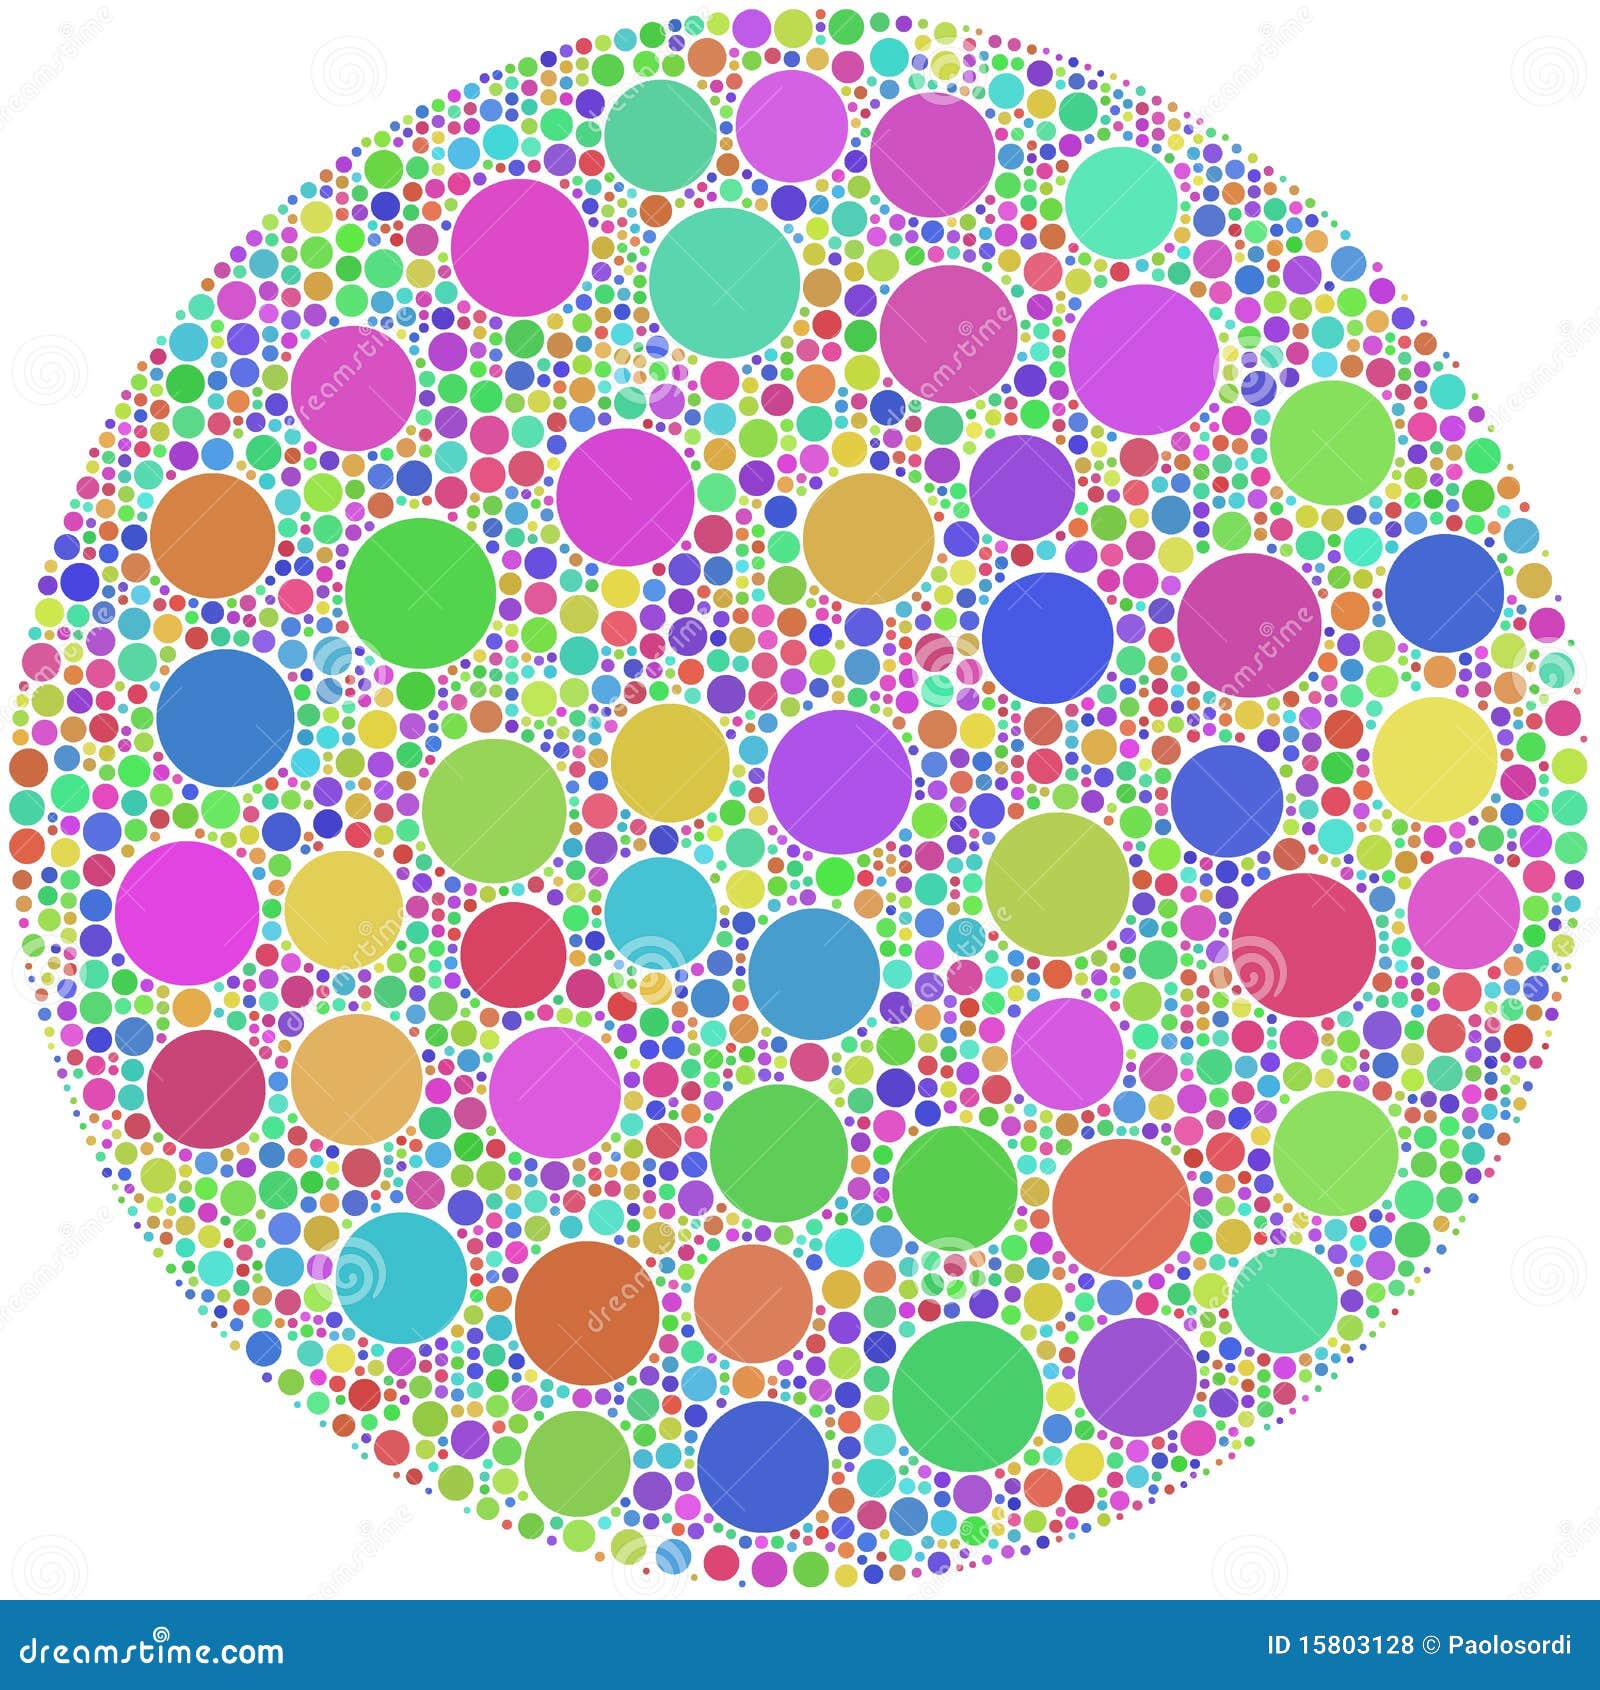 Известно в широком кругу. Круг с кругами внутри. Кружочки с кружочками внутри. Кружочки цветные с узорами внутри. Множество кружков.